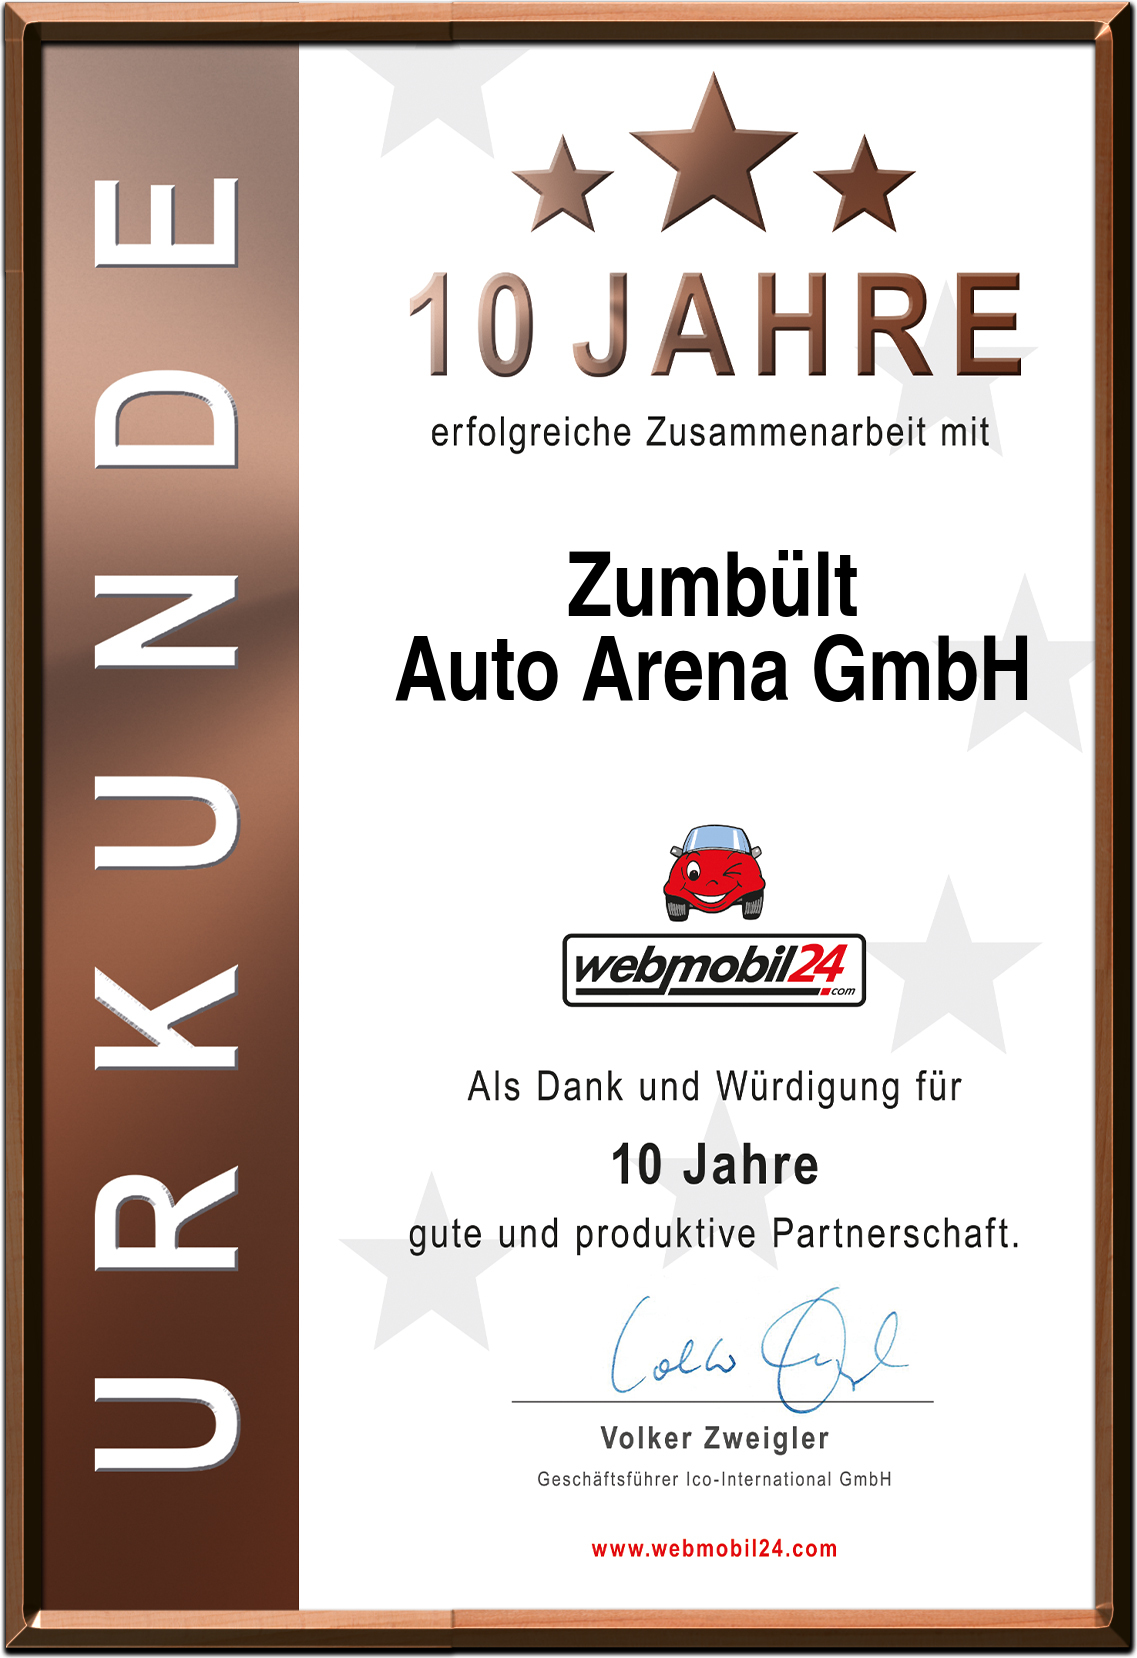 ZumbültAuto Arena GmbH